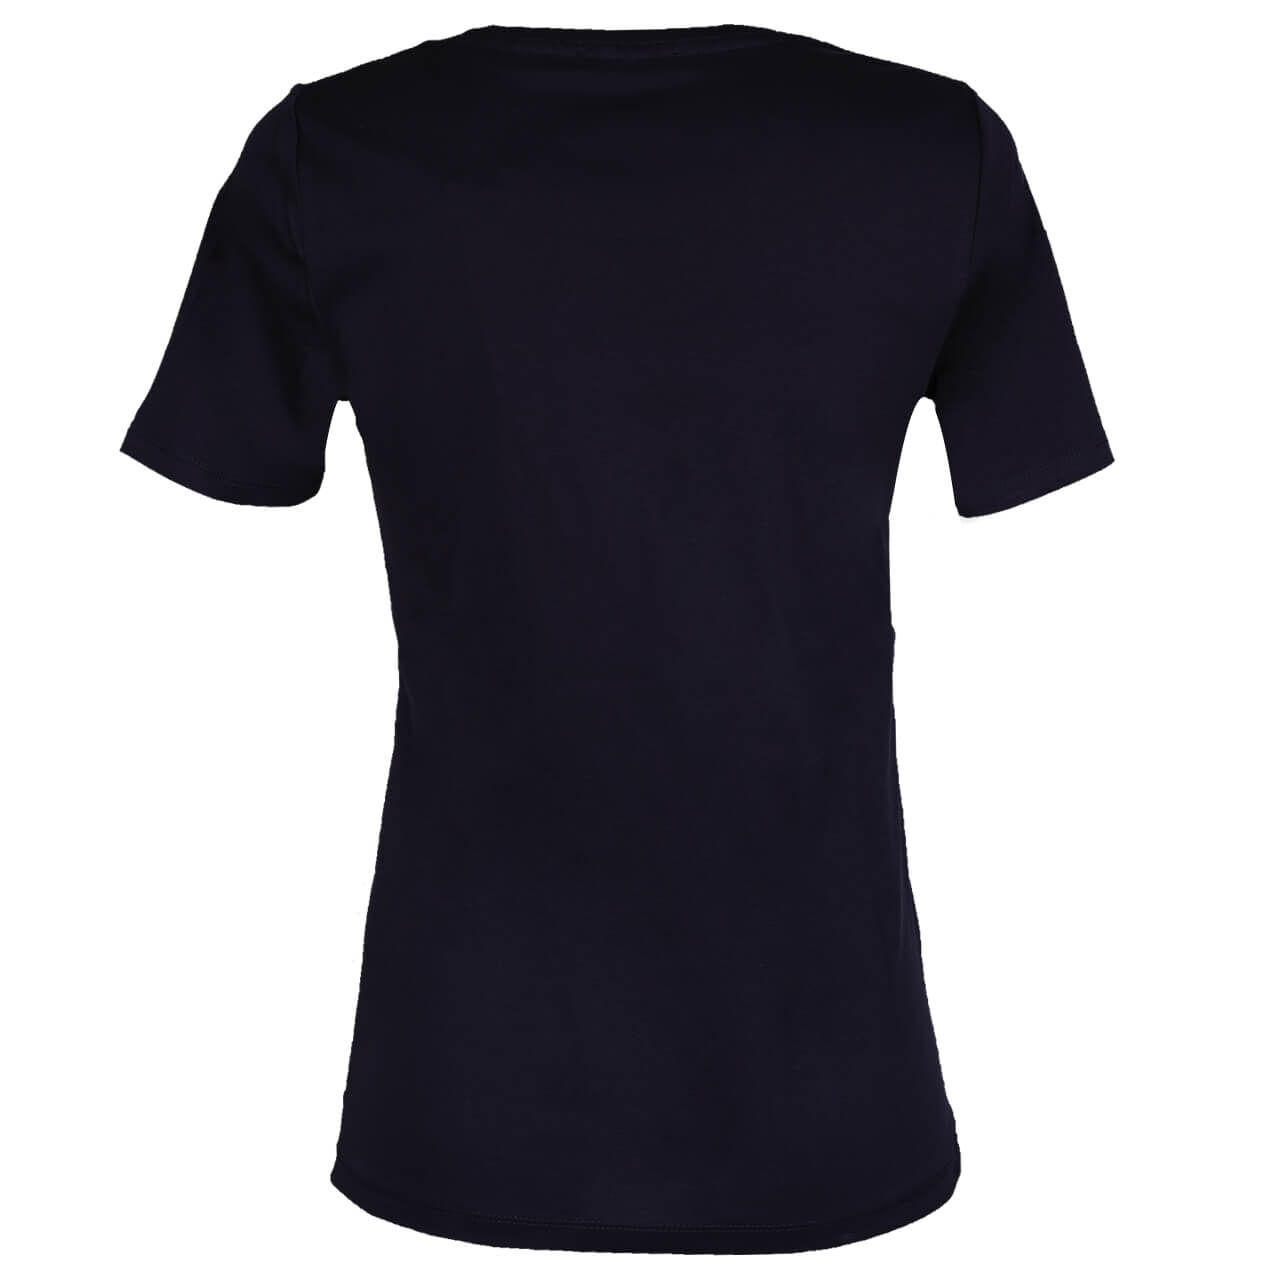 s.Oliver T-Shirt für Damen in Dunkelblau, FarbNr.: 5959